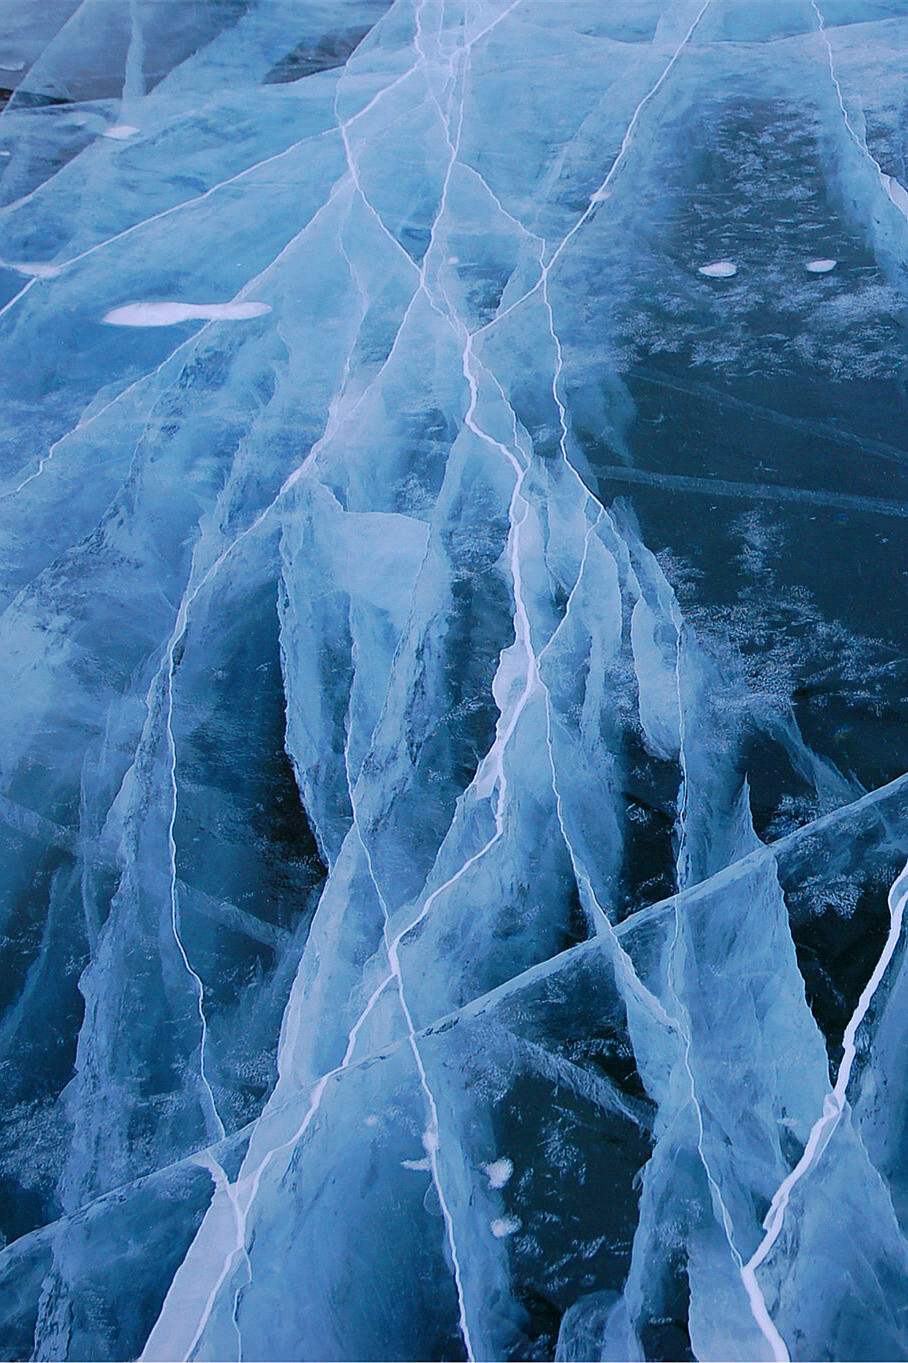 贝加尔湖清澈的湖水结成了完全透明的冰